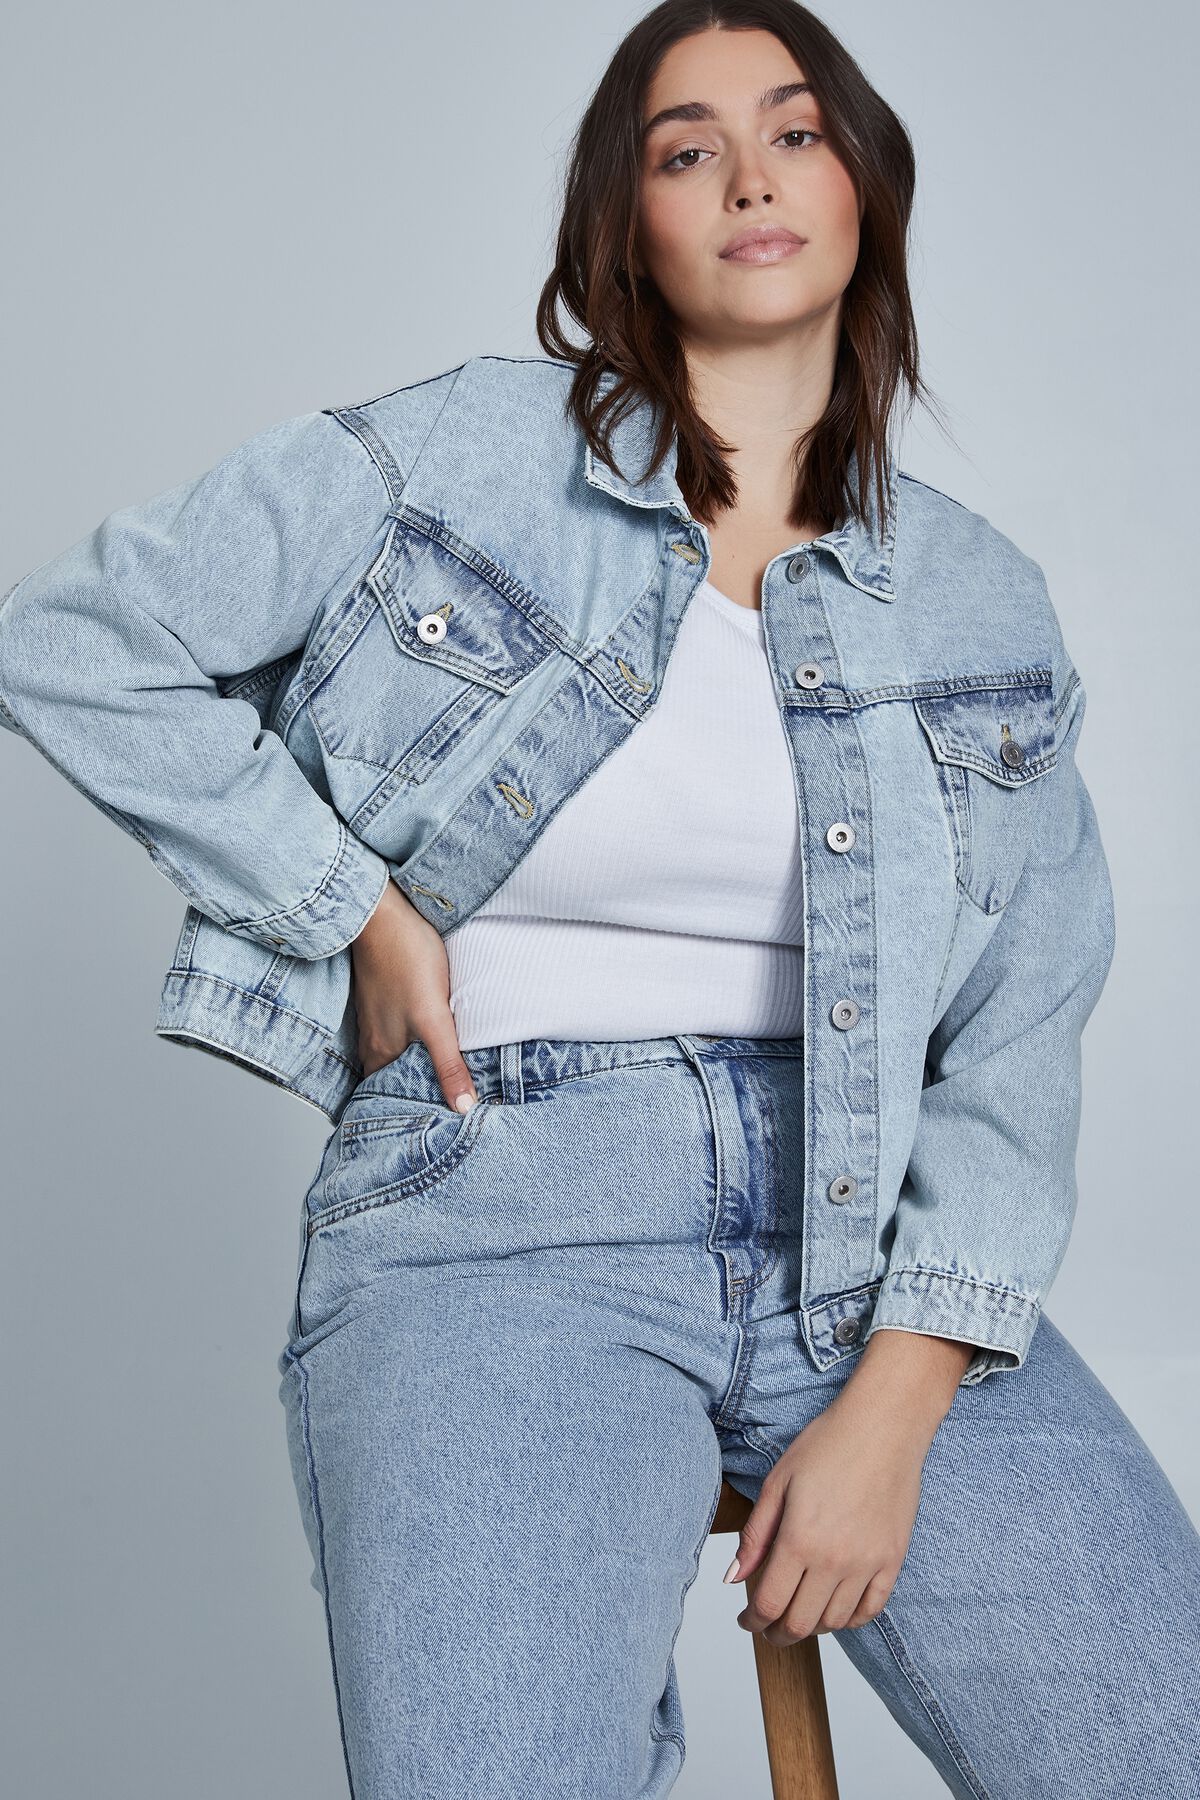 Women's Denim Jean Jackets & Cropped Jackets| Cotton On